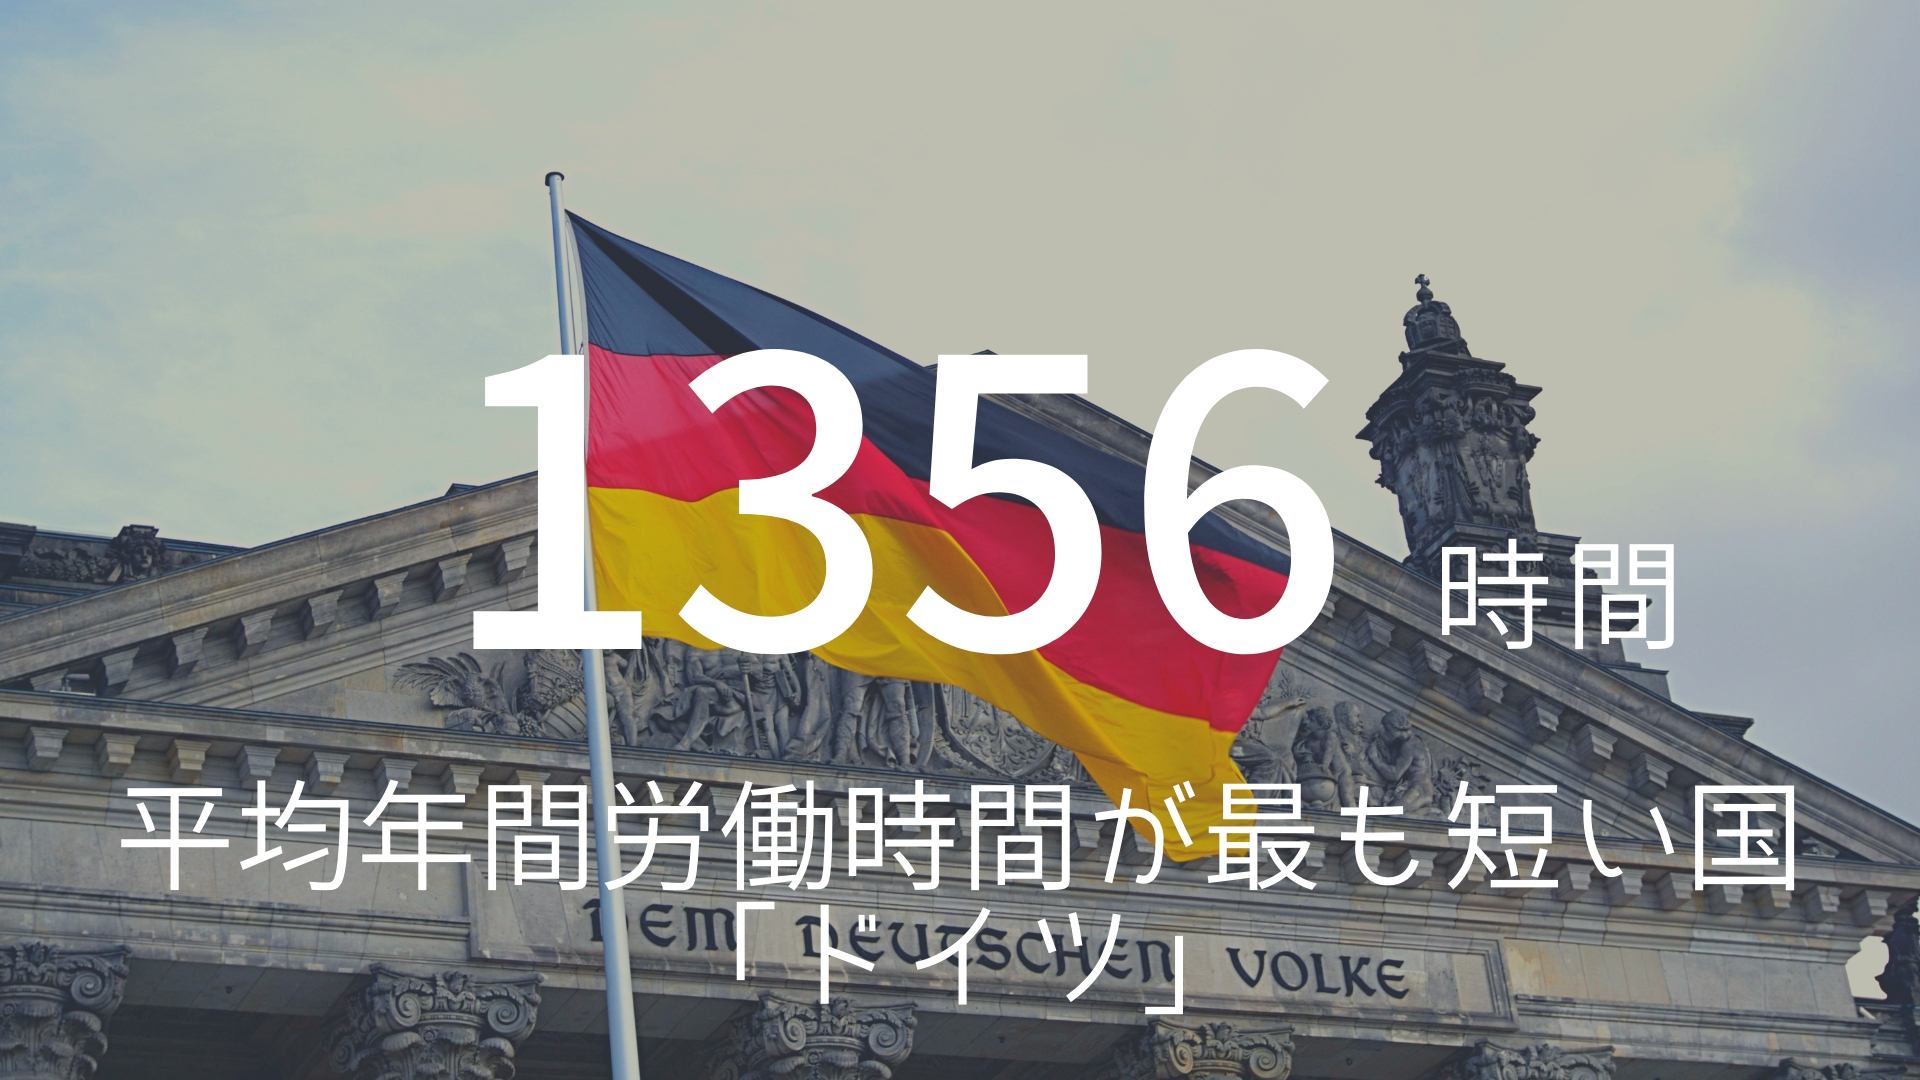 「1356時間」 >>> 平均年間労働時間が最も短い国「ドイツ」